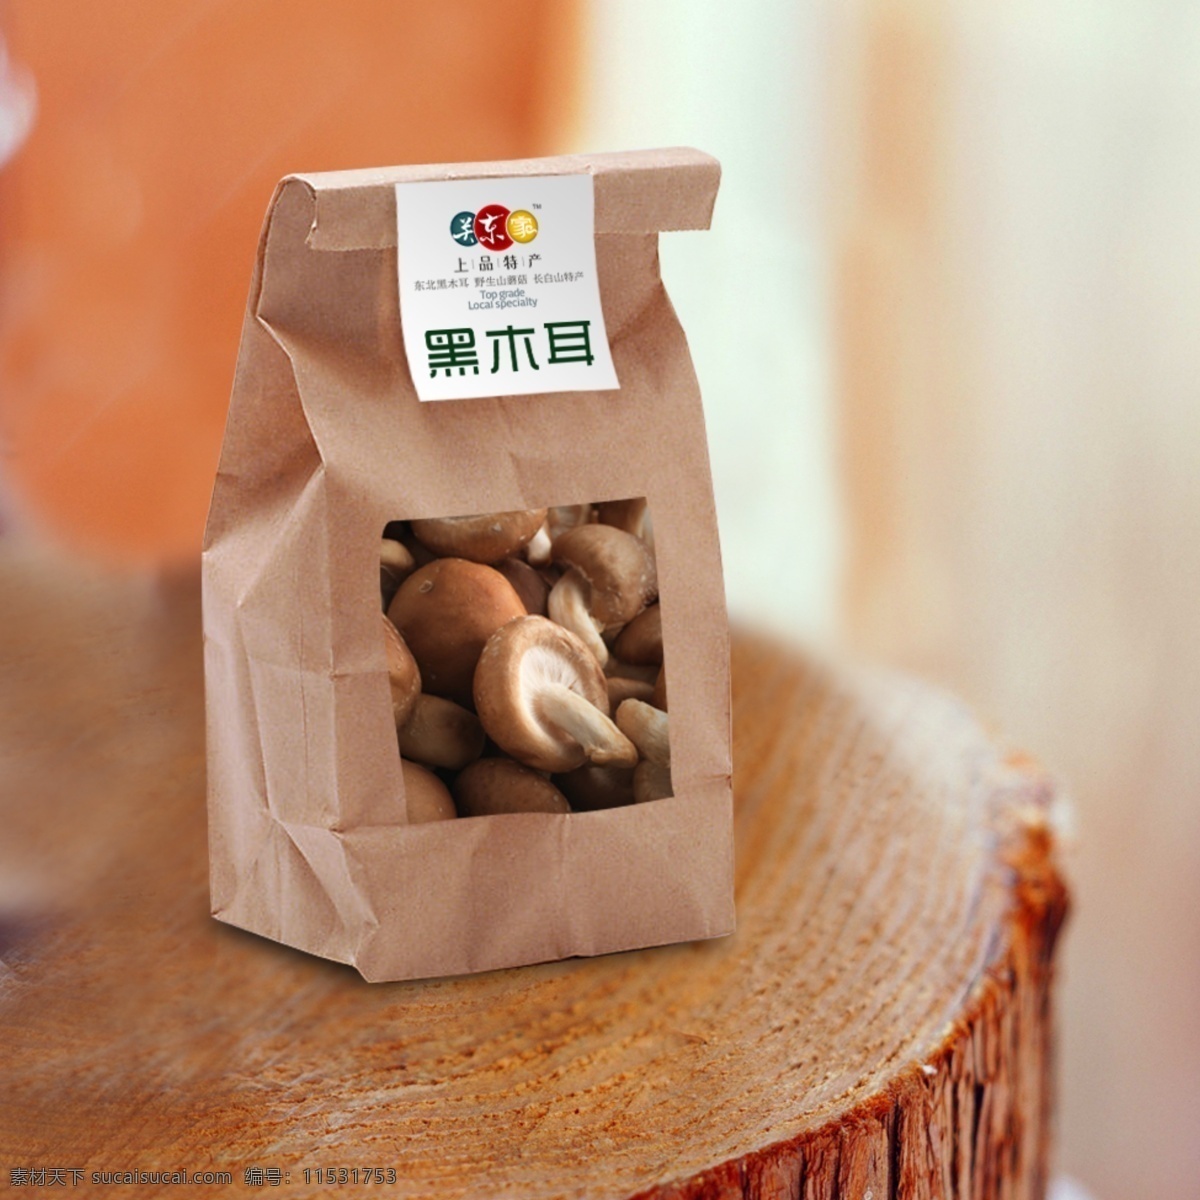 牛皮纸 包装 效果图 展示 牛皮纸袋 包装袋 包装展示图 产品包装袋 土特产包装 蘑菇包装分层 包装设计